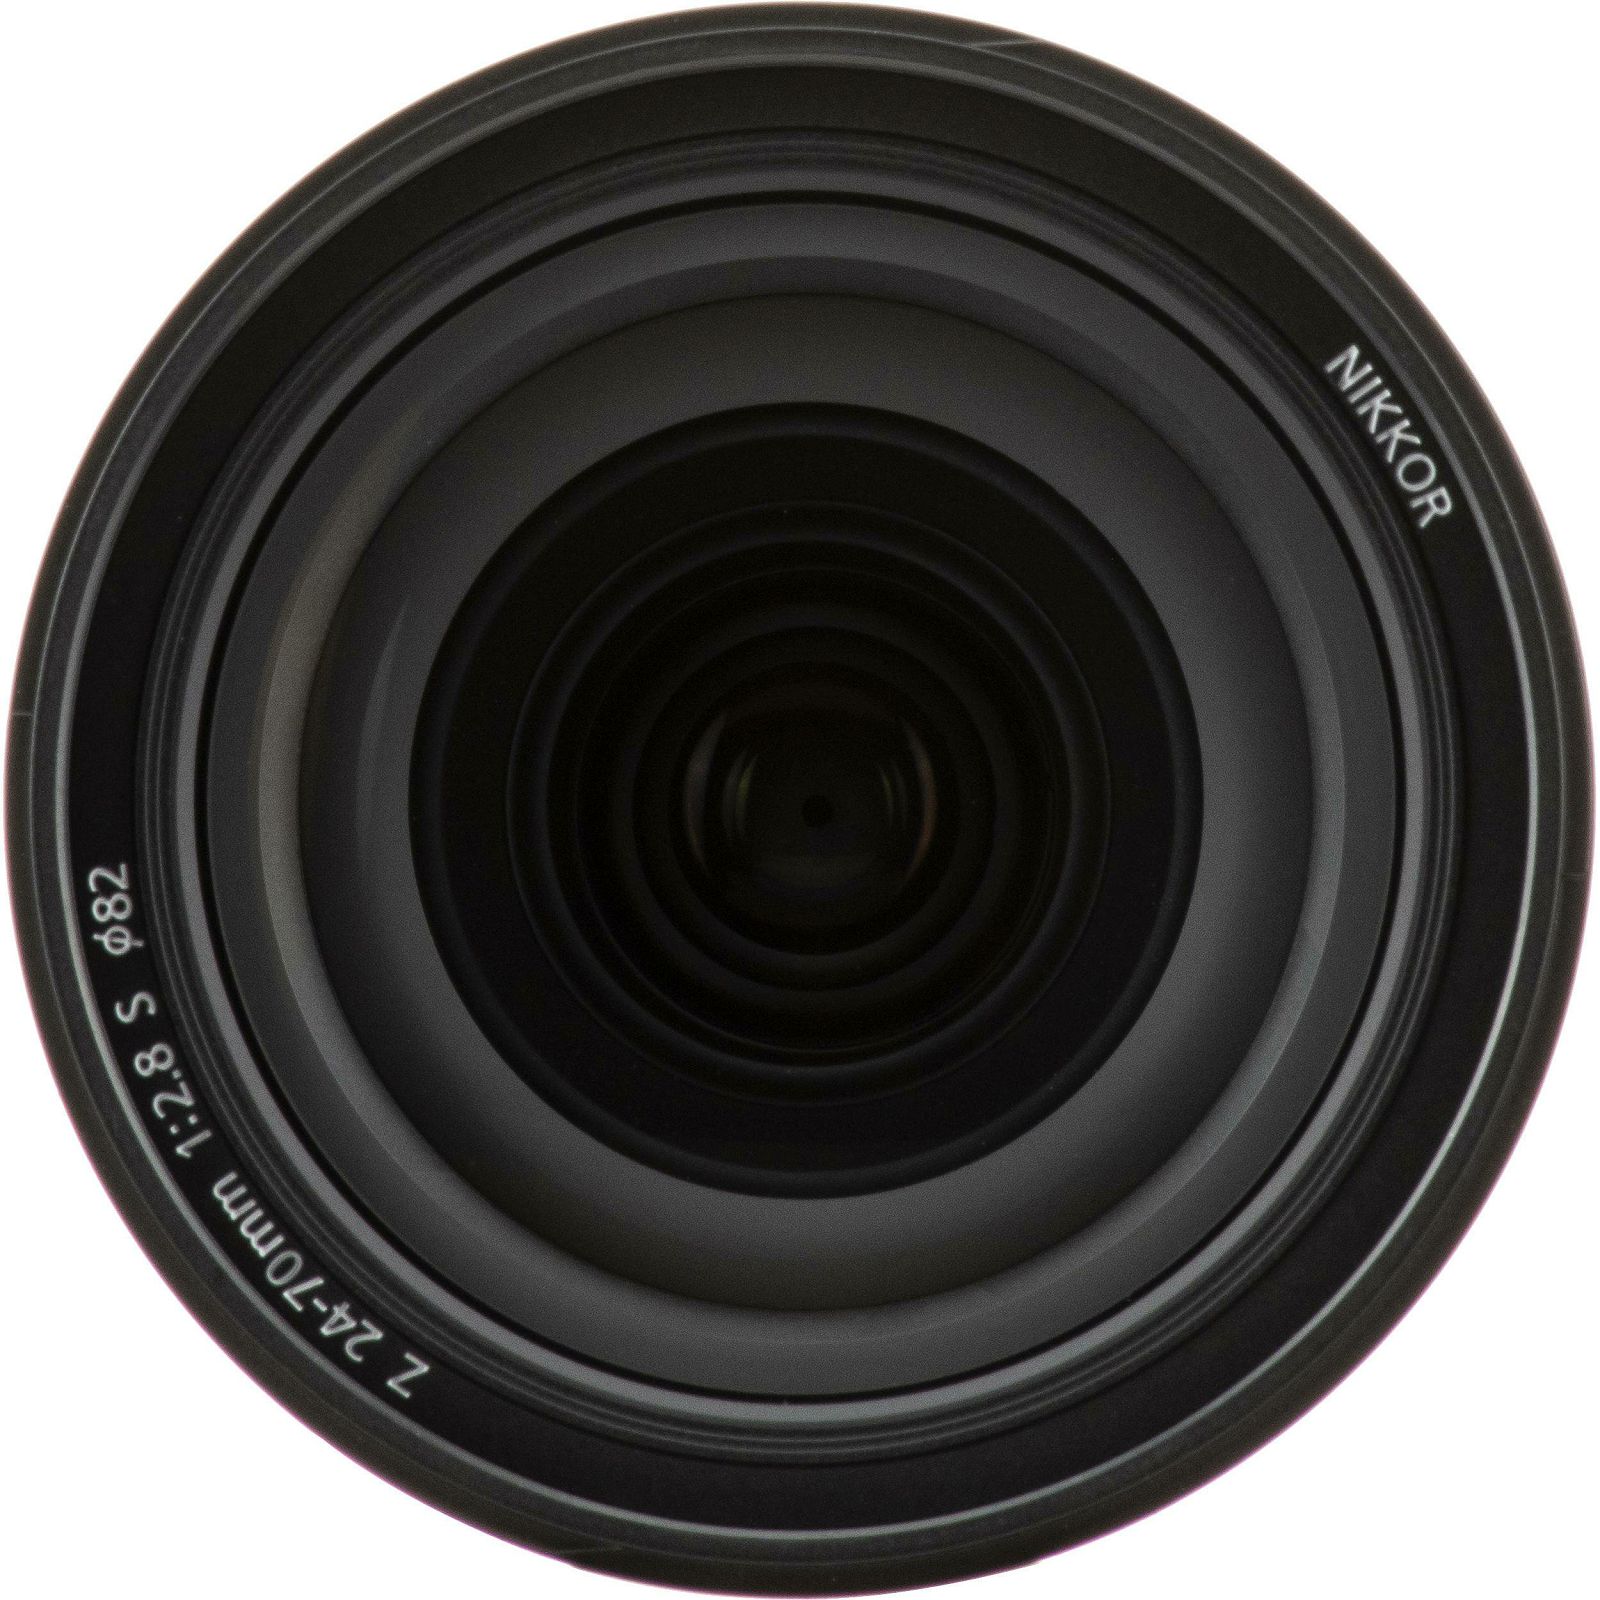 Nikon Z 24-70mm f/2.8 S standardni objektiv Nikkor 24-70 F2.8 2.8 zoom lens (JMA708DA)